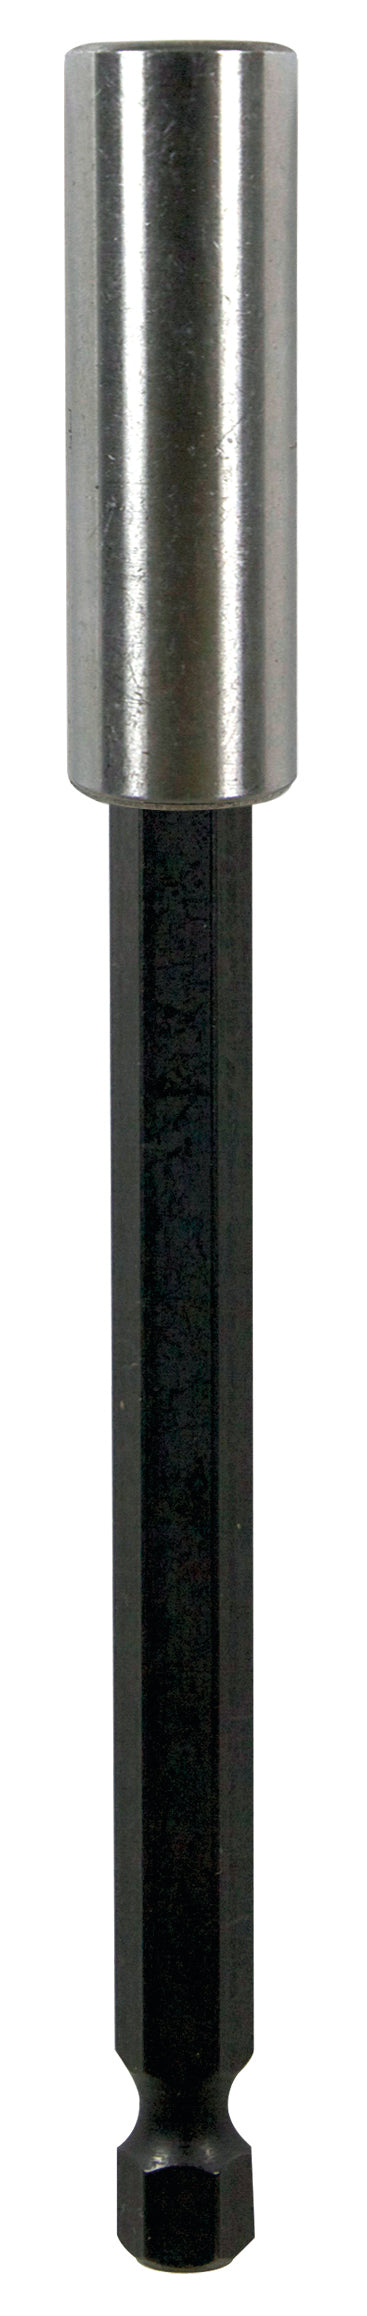 Magnetic Adaptor & C/Clip E6.3 X 150mm (Qty 1)